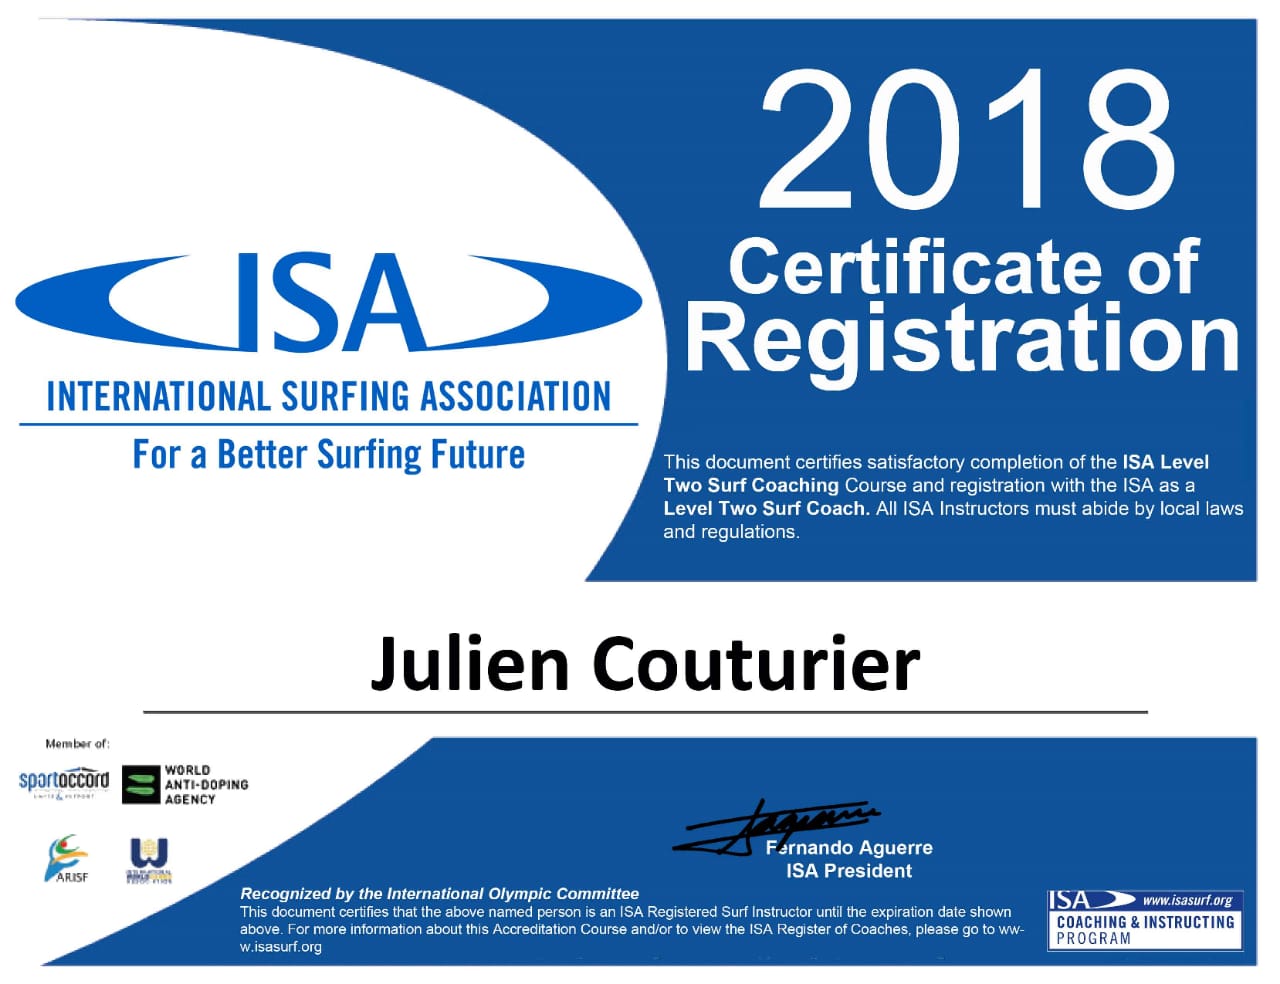 International surfing association diploma of Julien surf instructor in Bali ocean surf